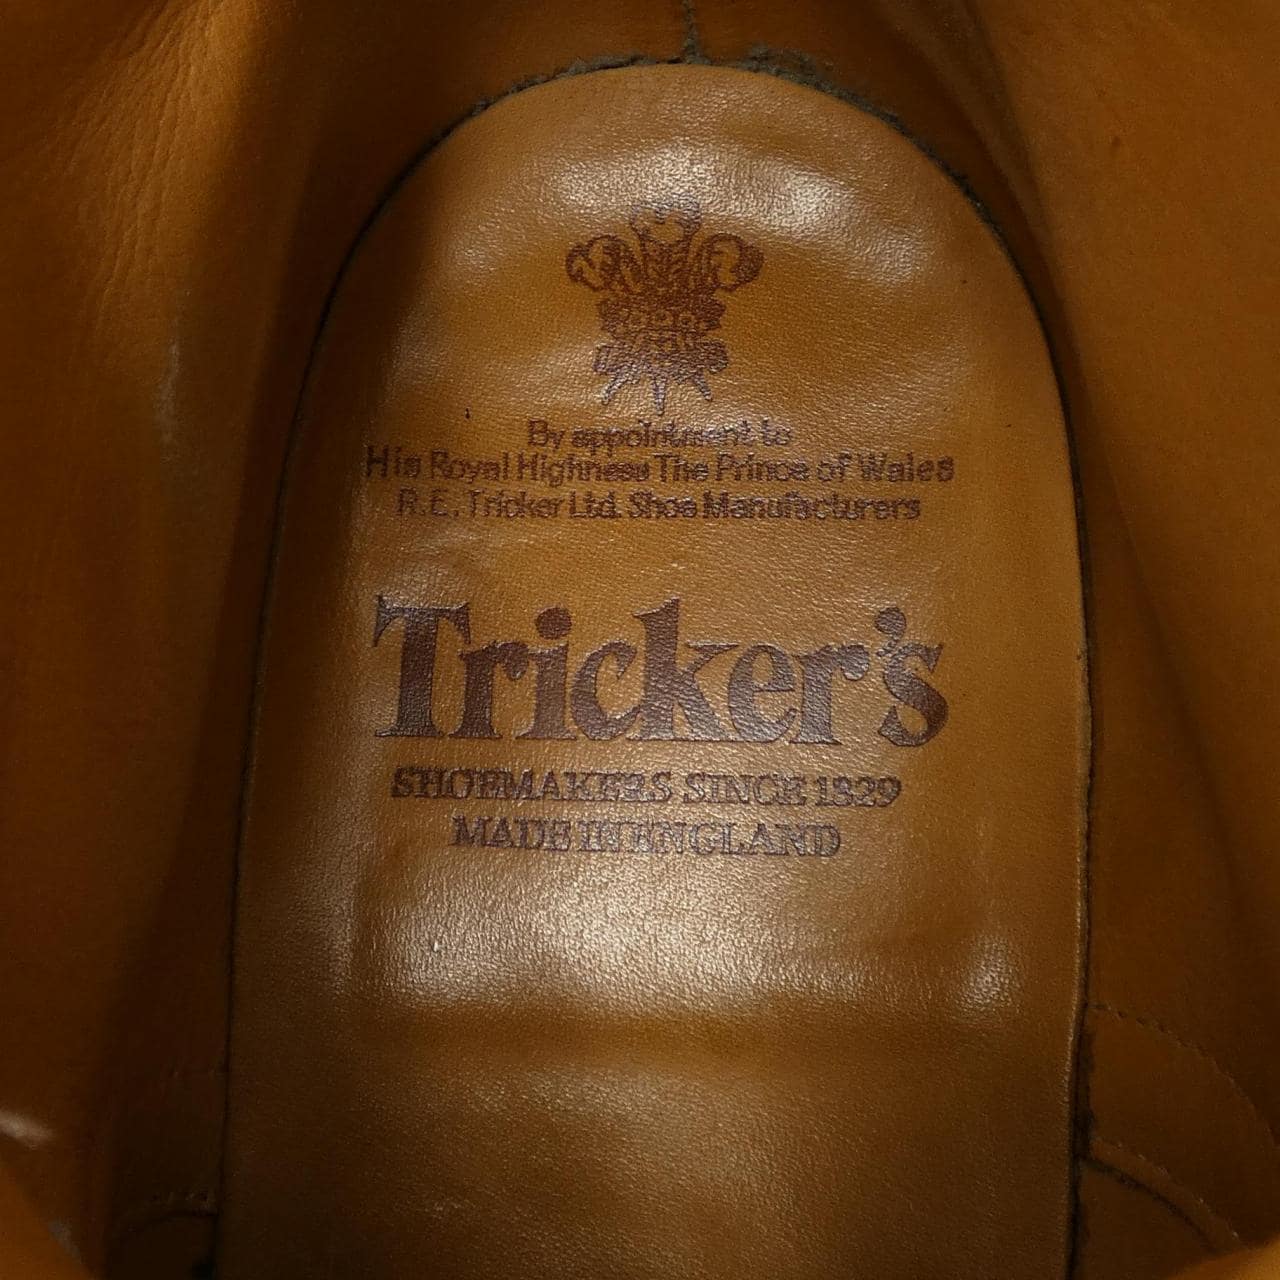 Tricker's Tricker's boots